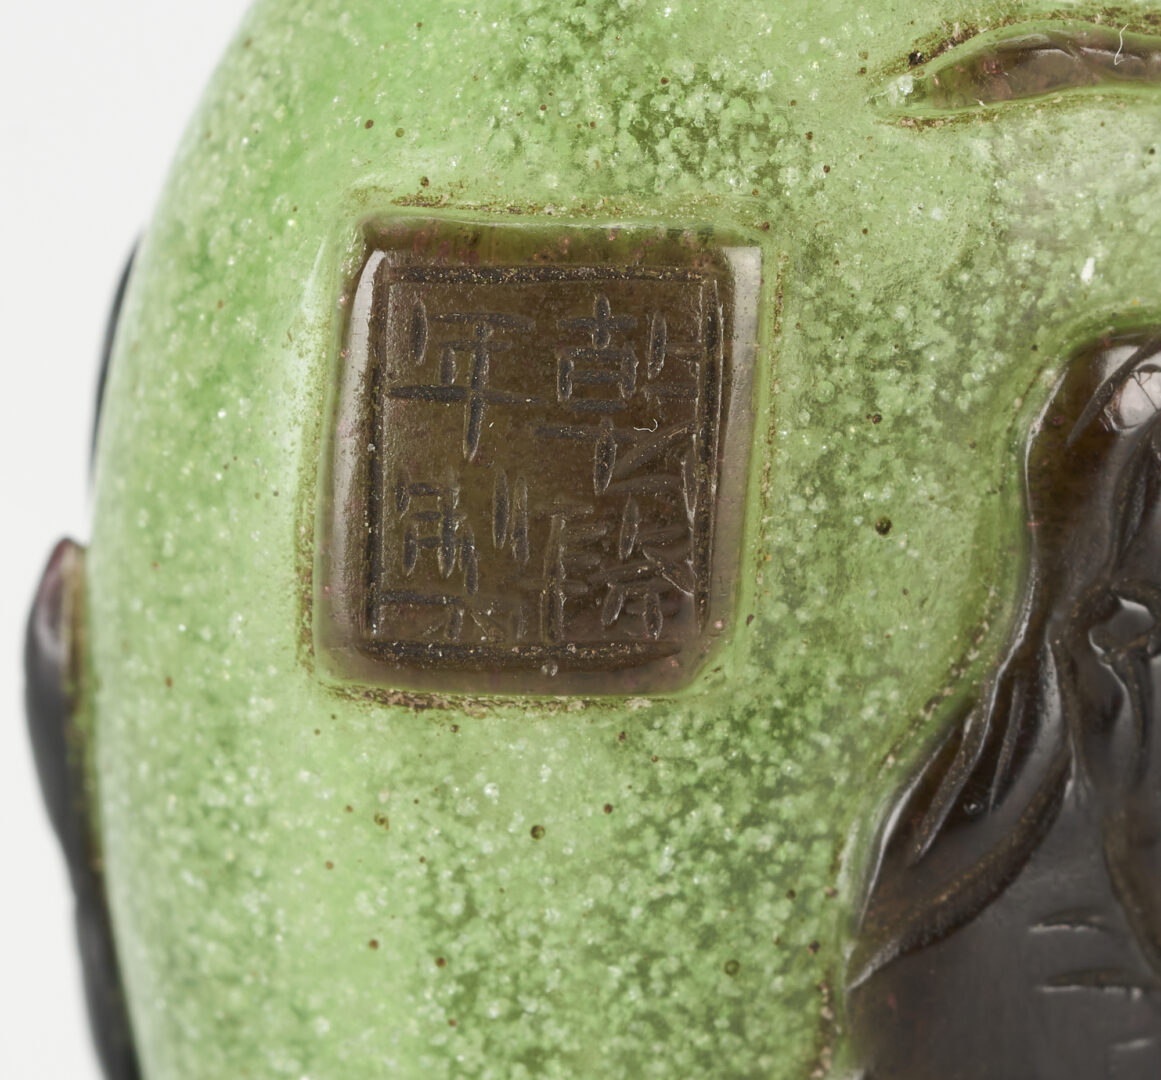 Lot 6: 4 Chinese Decorative Items: Bronze Bowl, Buddha and Peking Glass